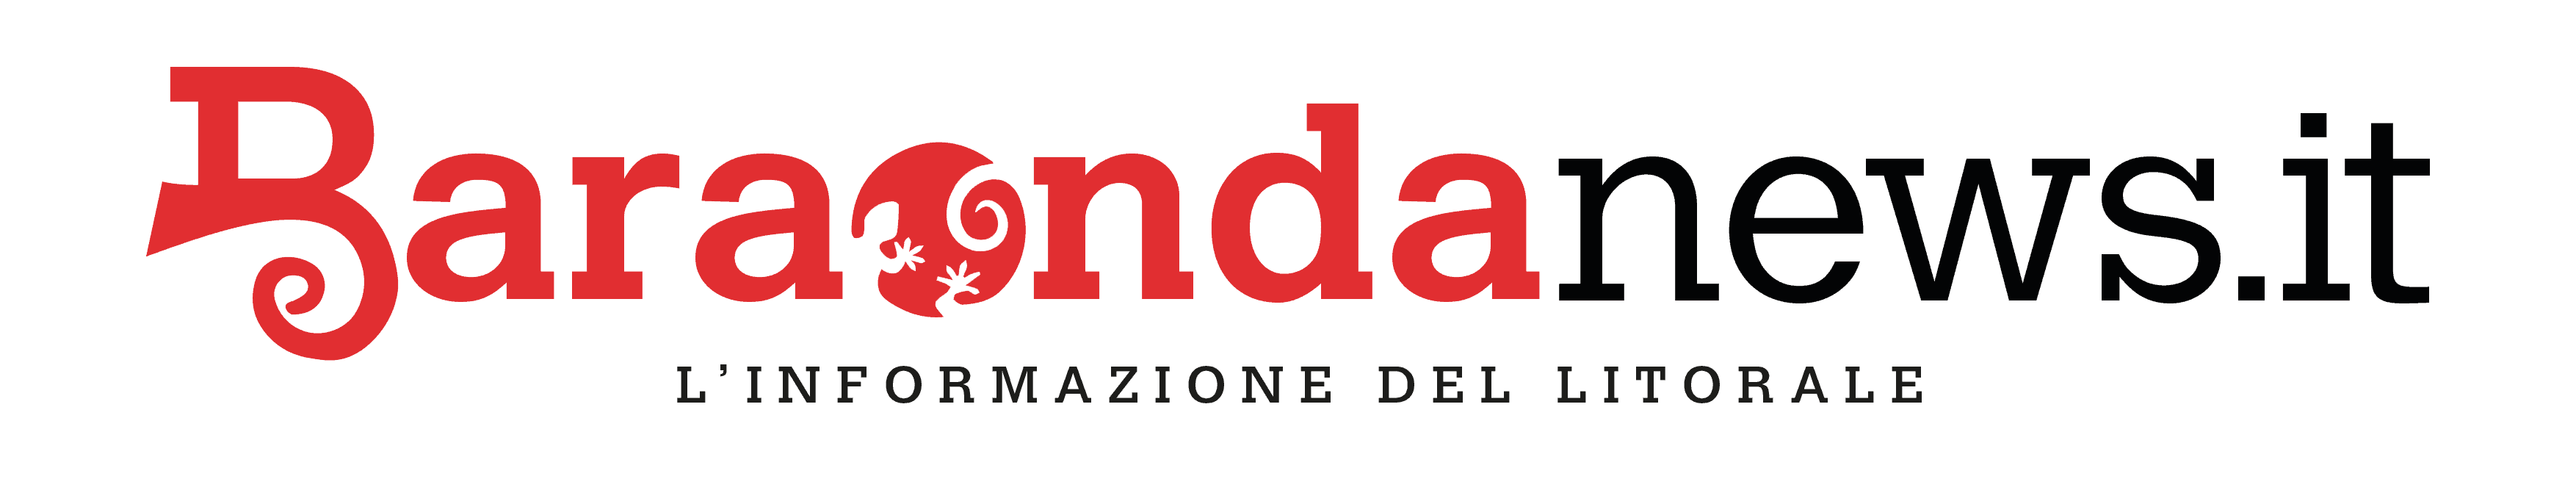 BaraondaNews.it – Quotidiano online di ladispoli cerveteri e litorale nord di Roma